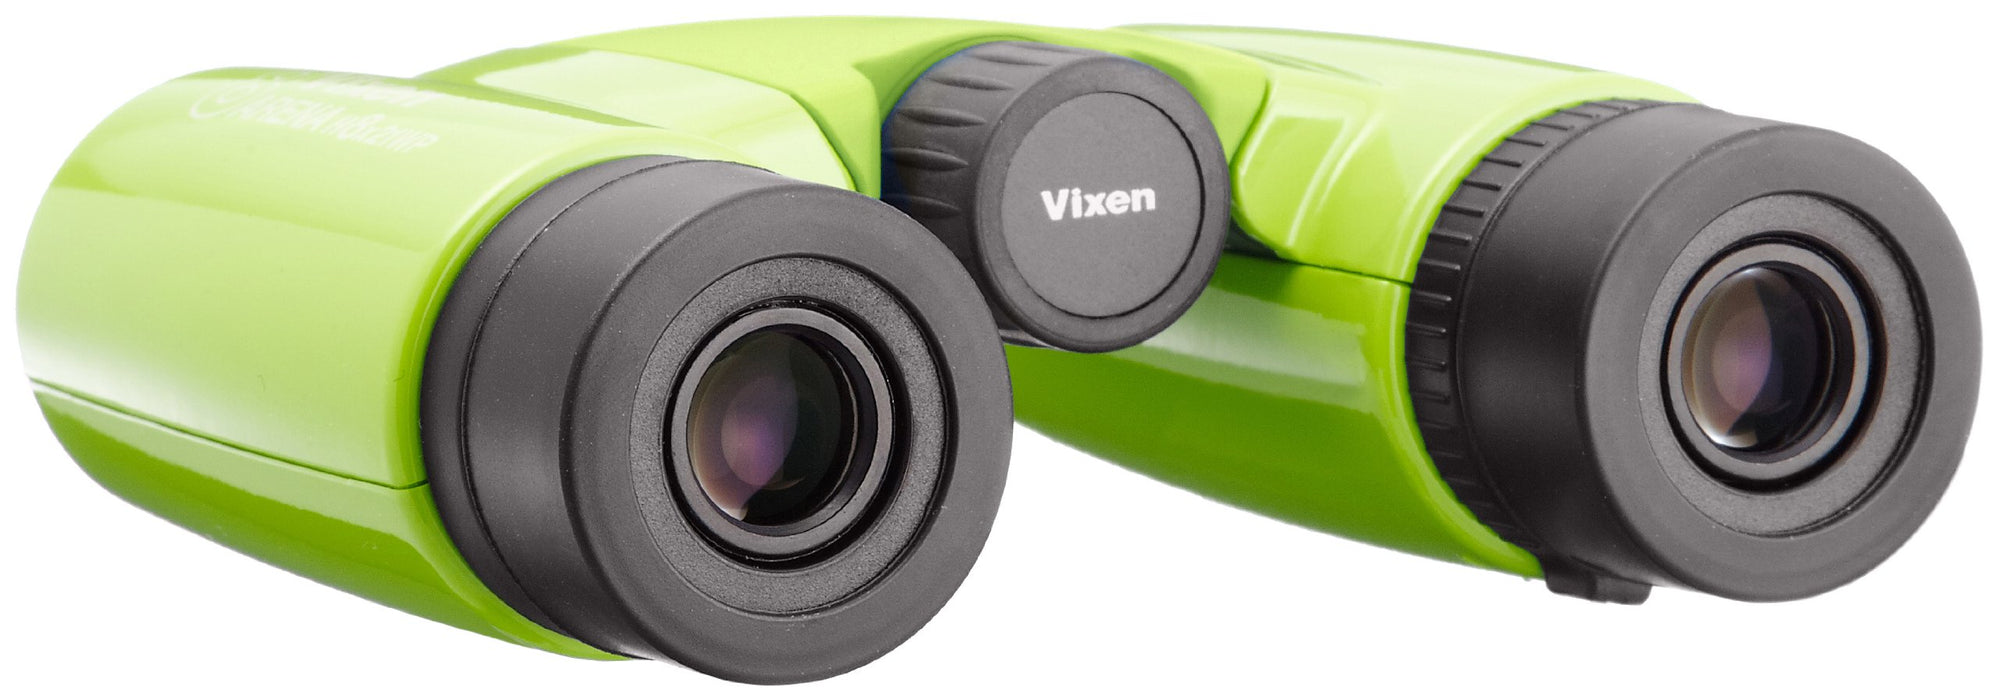 Vixen Binoculars Arena H Series H8x21 WP Green 13504-2 Compact Design Waterproof_3